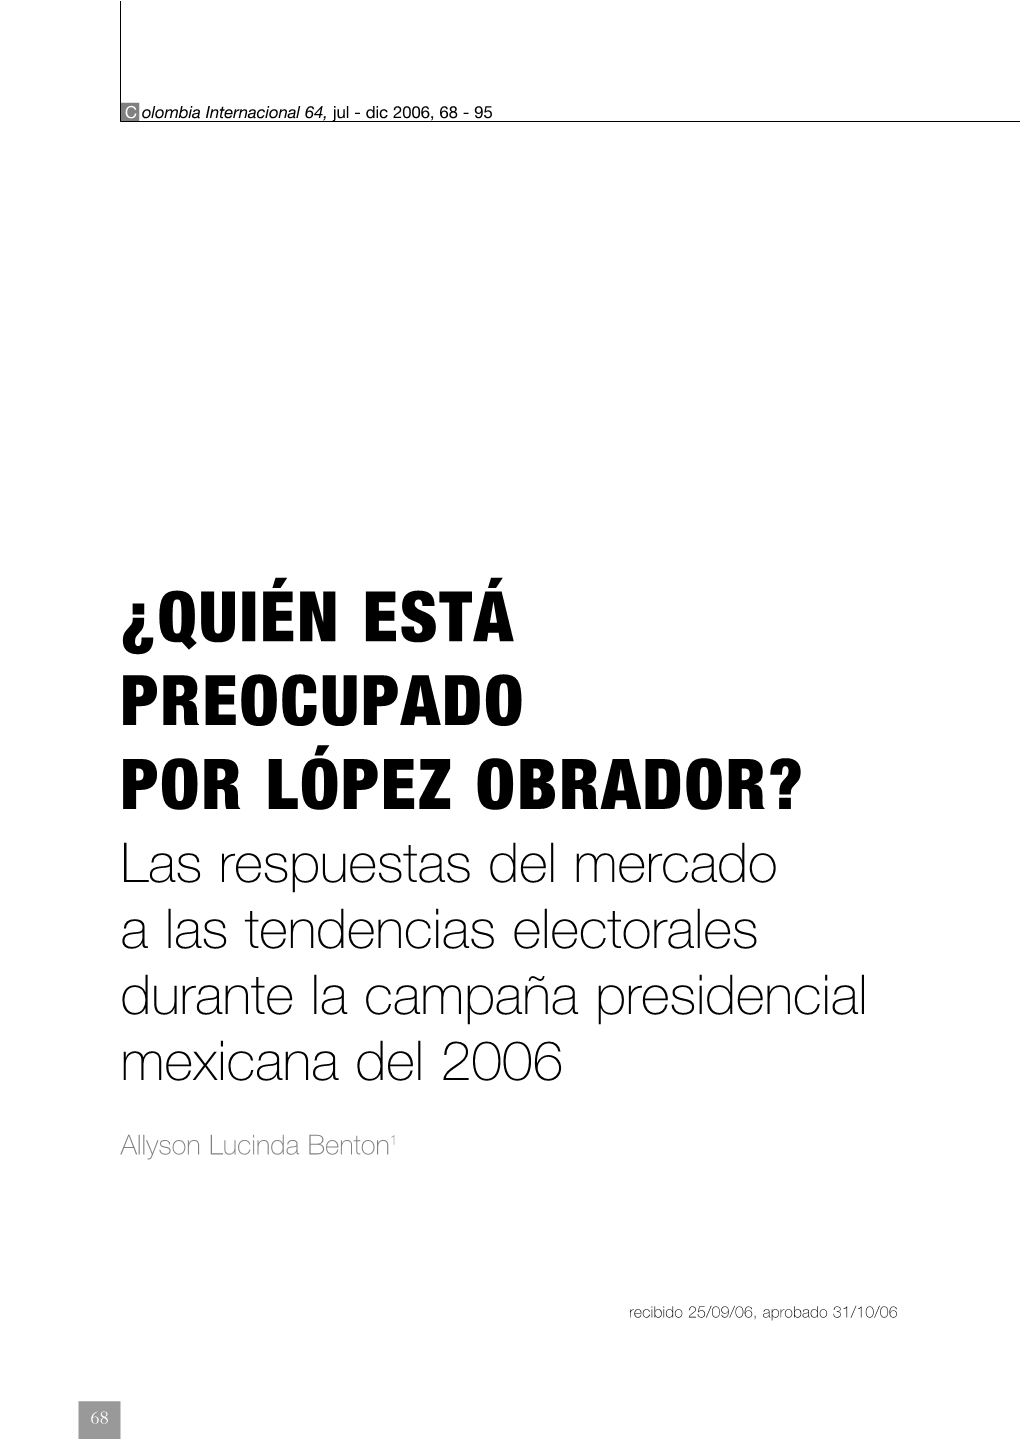 ¿QUIÉN ESTÁ PREOCUPADO POR LÓPEZ OBRADOR? Las Respuestas Del Mercado a Las Tendencias Electorales Durante La Campaña Presidencial Mexicana Del 2006